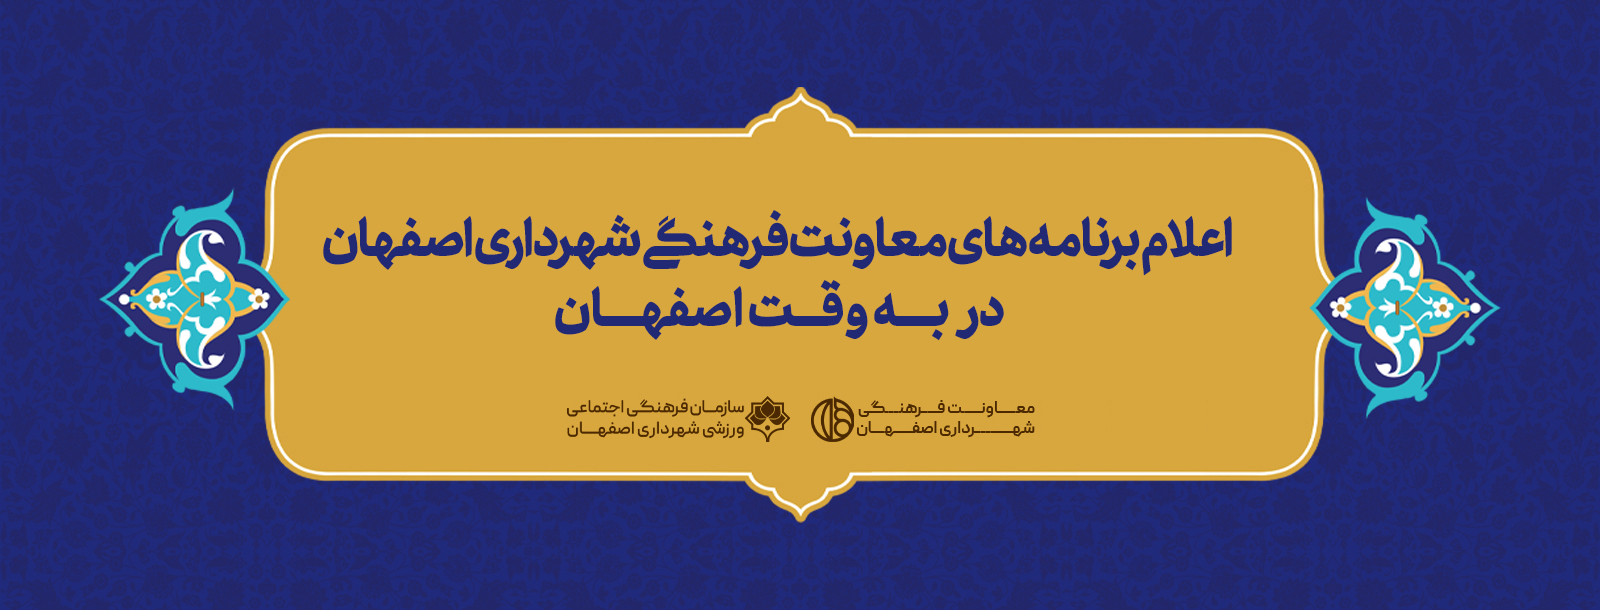 مناطق 15 گانه شهرداری اصفهان